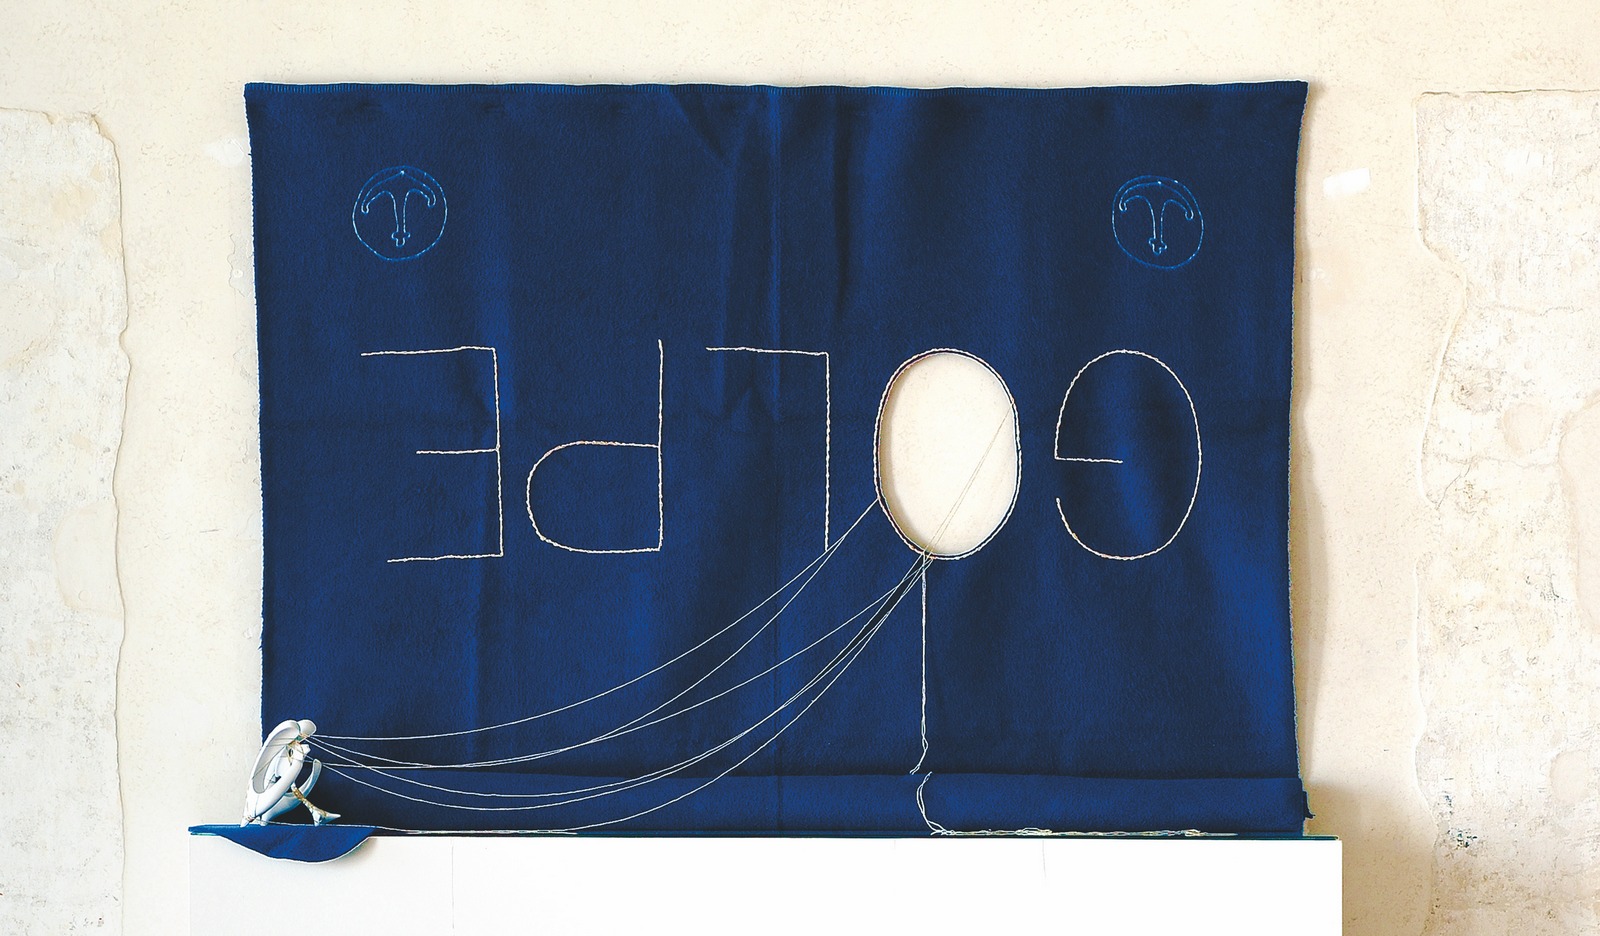 Gaggia-Dubbini, Golpe (2022; ricamo su coperta della Marina Militare Italiana, cavità ventricolare, stampa digitale in resina, 120 x 180 x 20 cm). Foto: Michele Alberto Sereni